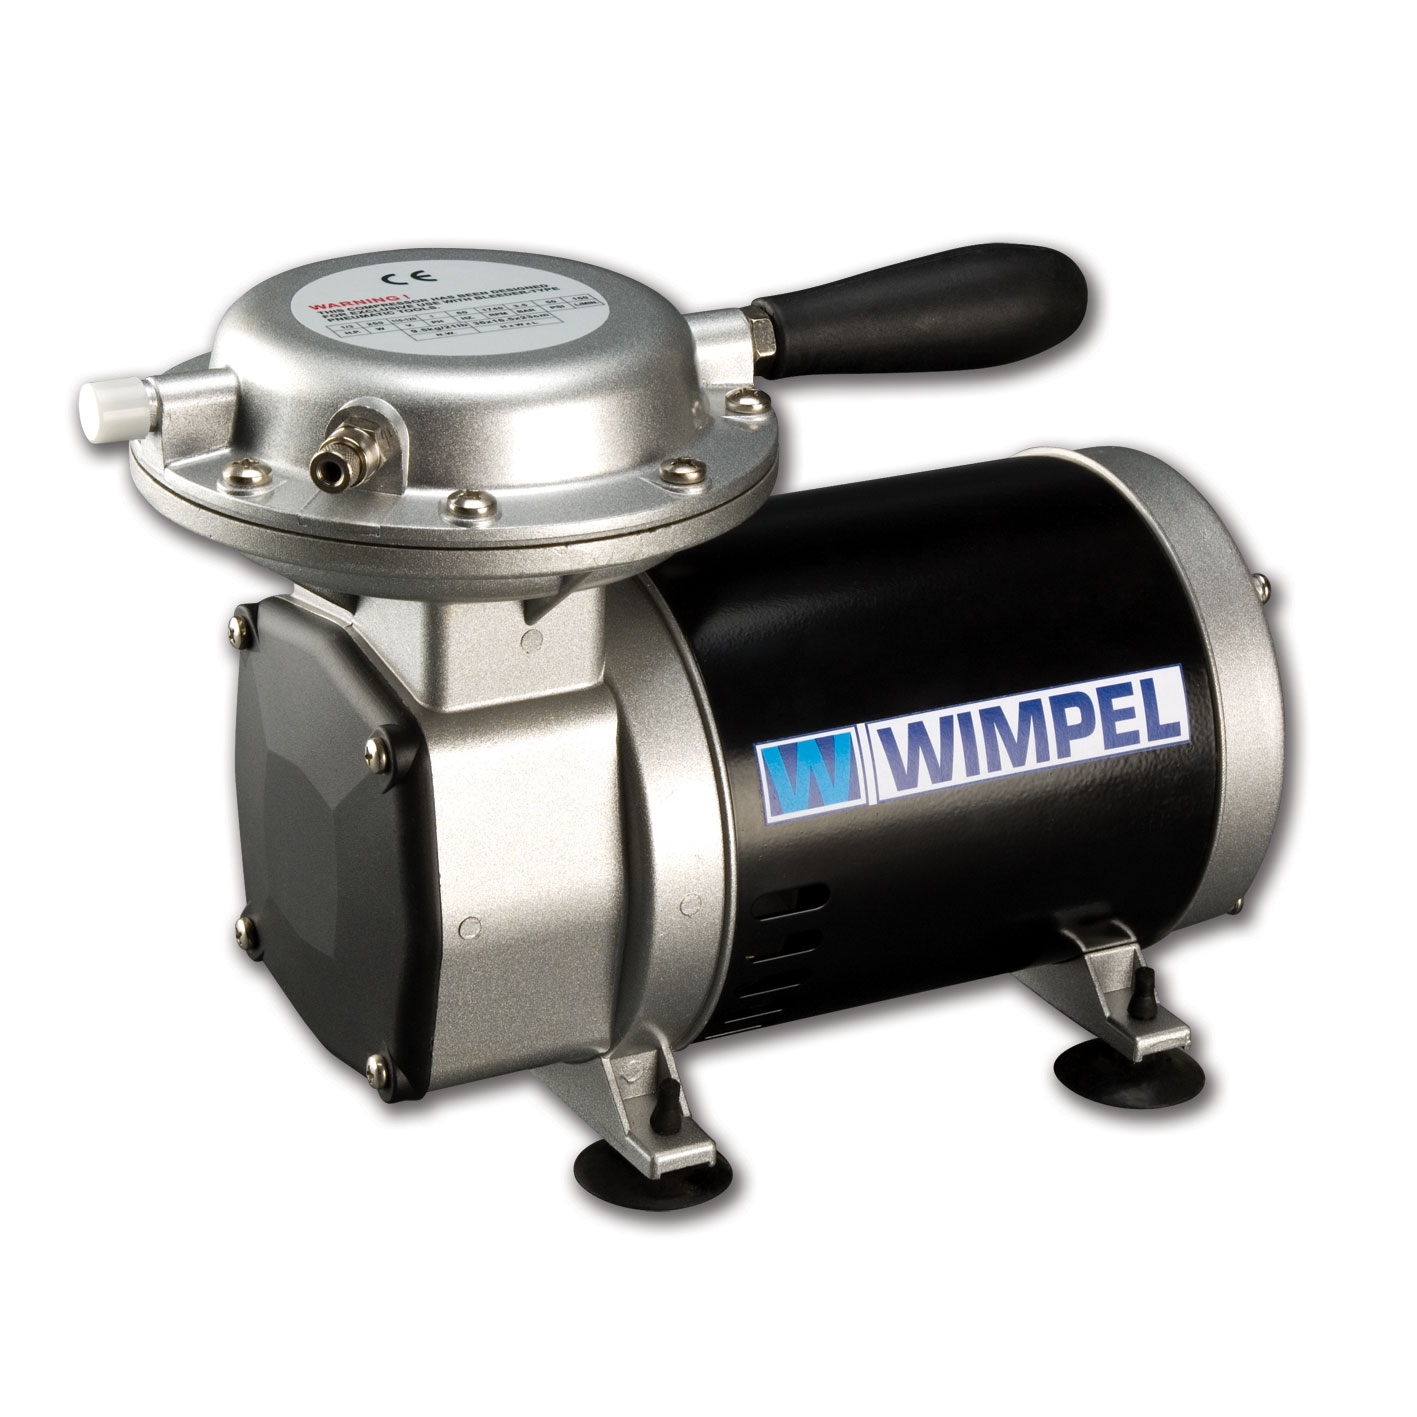 Compressor Wimpel Comp2 para Pistolas e Aerógrafos-Bivolt - melhor Tufãozinho do mercado - Wimpel